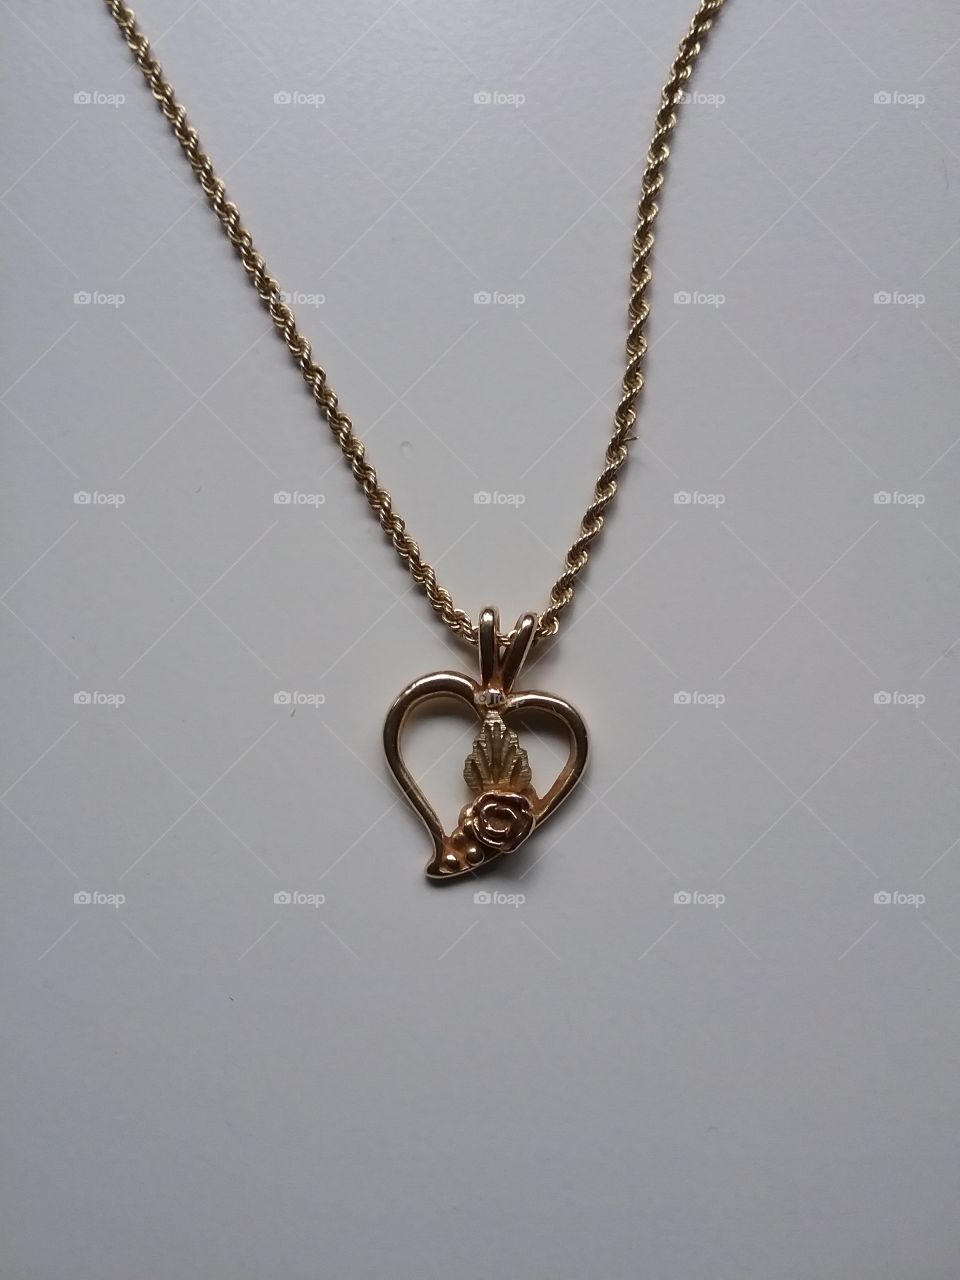 Black Hills Gold necklace